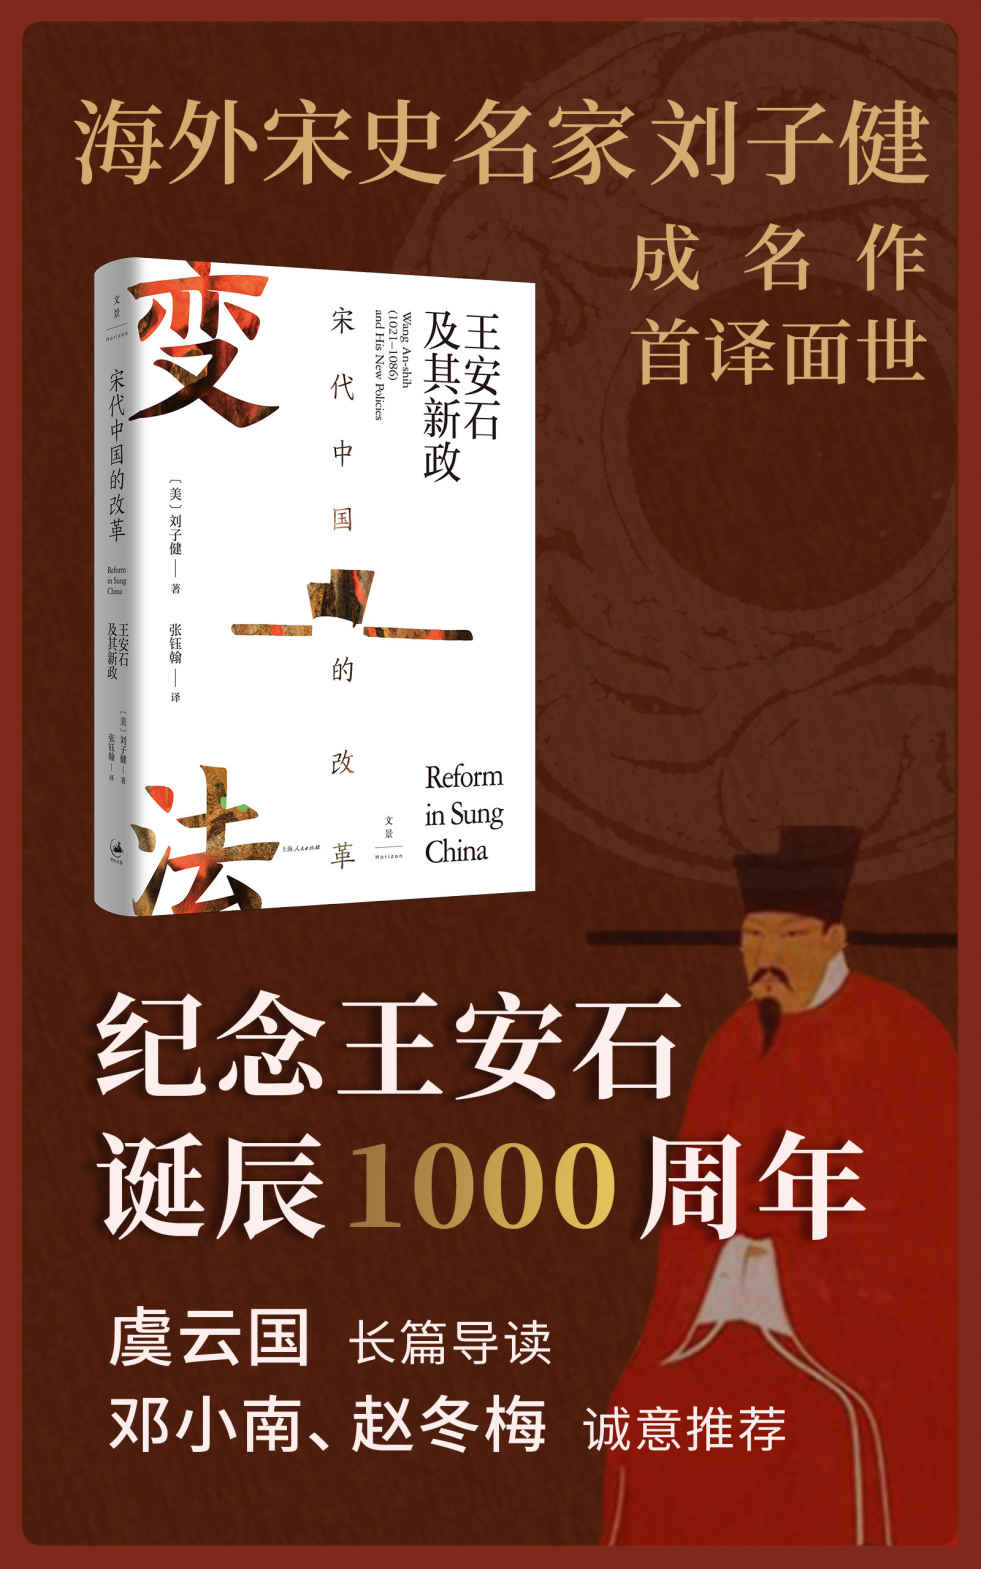 《宋代中国的改革》-azw3,mobi,epub,pdf,txt,kindle电子书免费下载